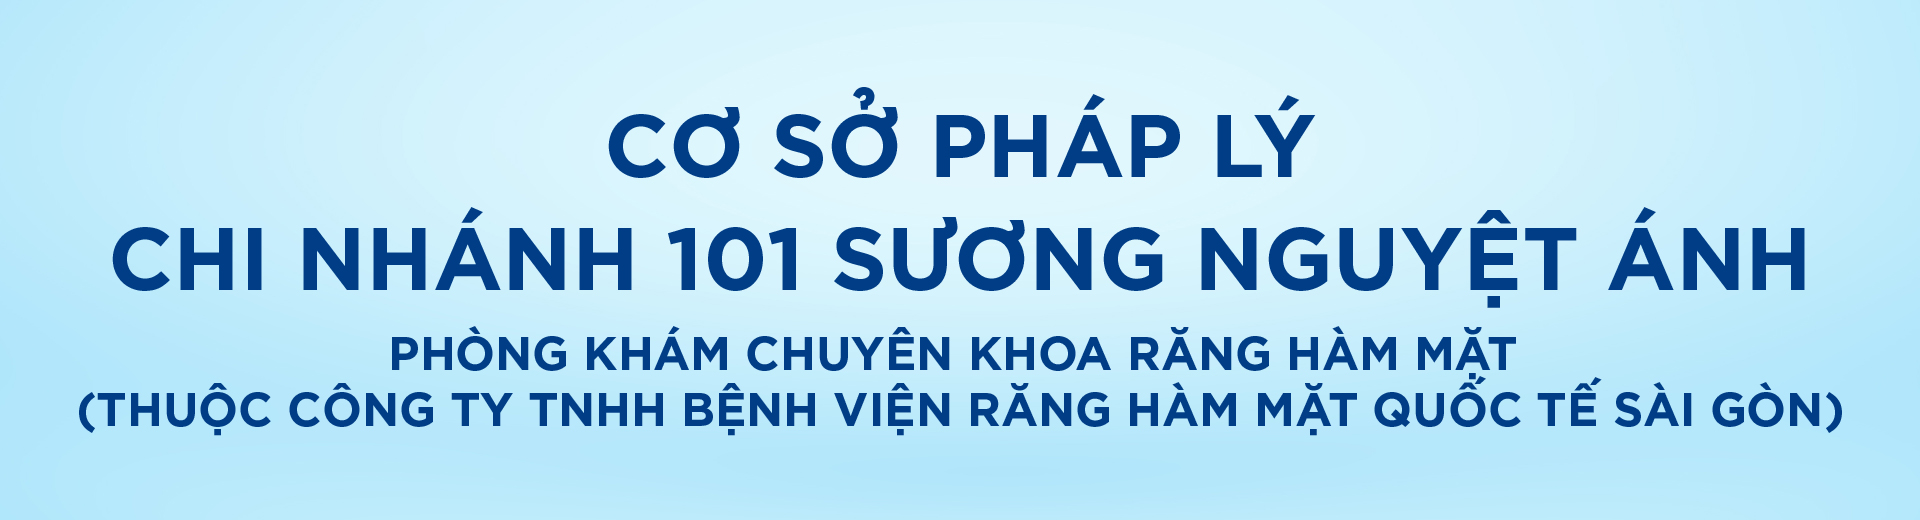 [Top Banner Desktop] Bảo vệ: Cơ sở pháp lý Phòng khám chuyên khoa răng hàm mặt (Thuộc công ty TNHH Bệnh viện răng hàm mặt quốc tế Sài Gòn)